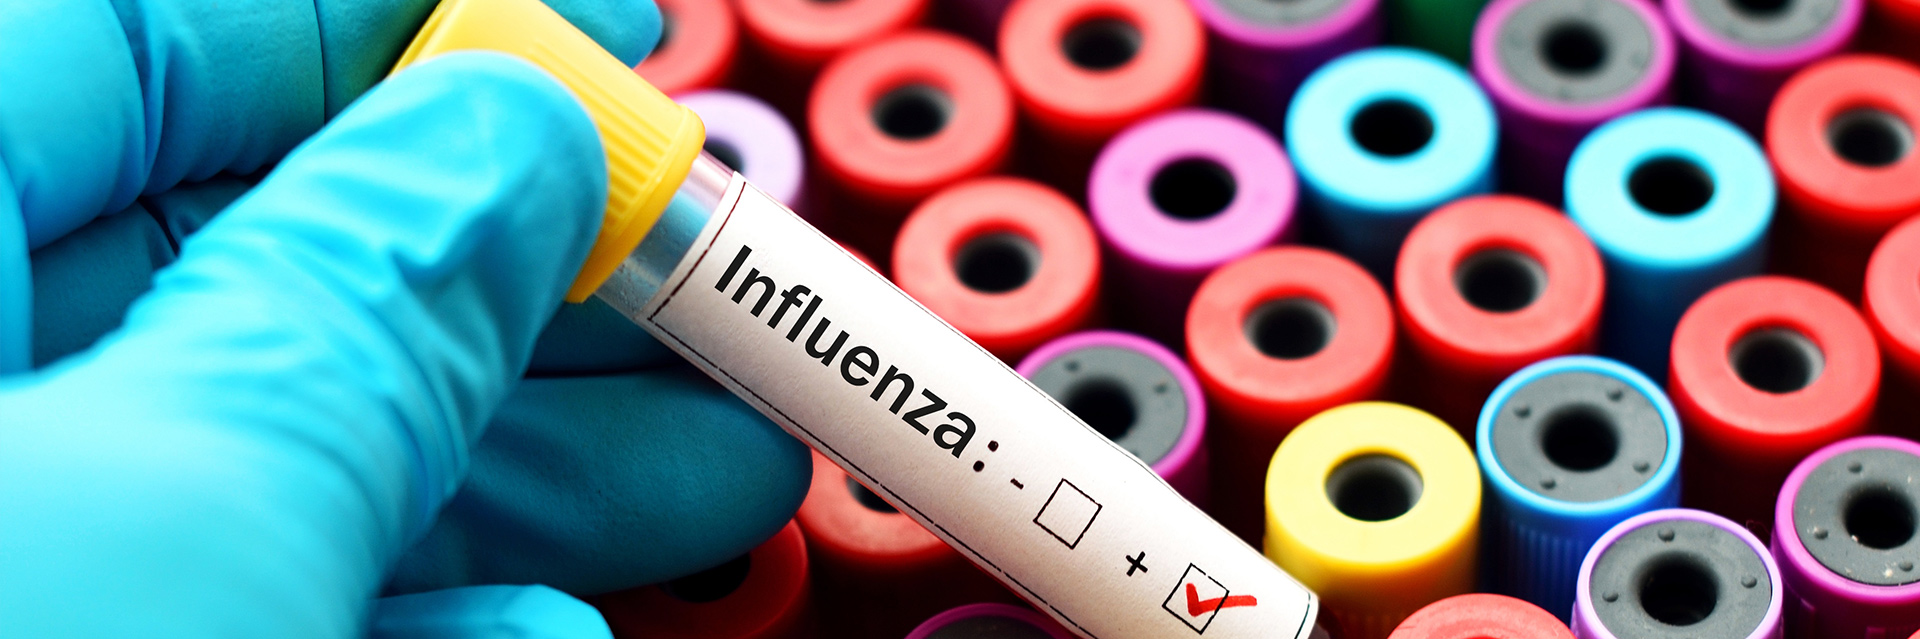 Grypa typu A/H1N1 - podstawowe informacje